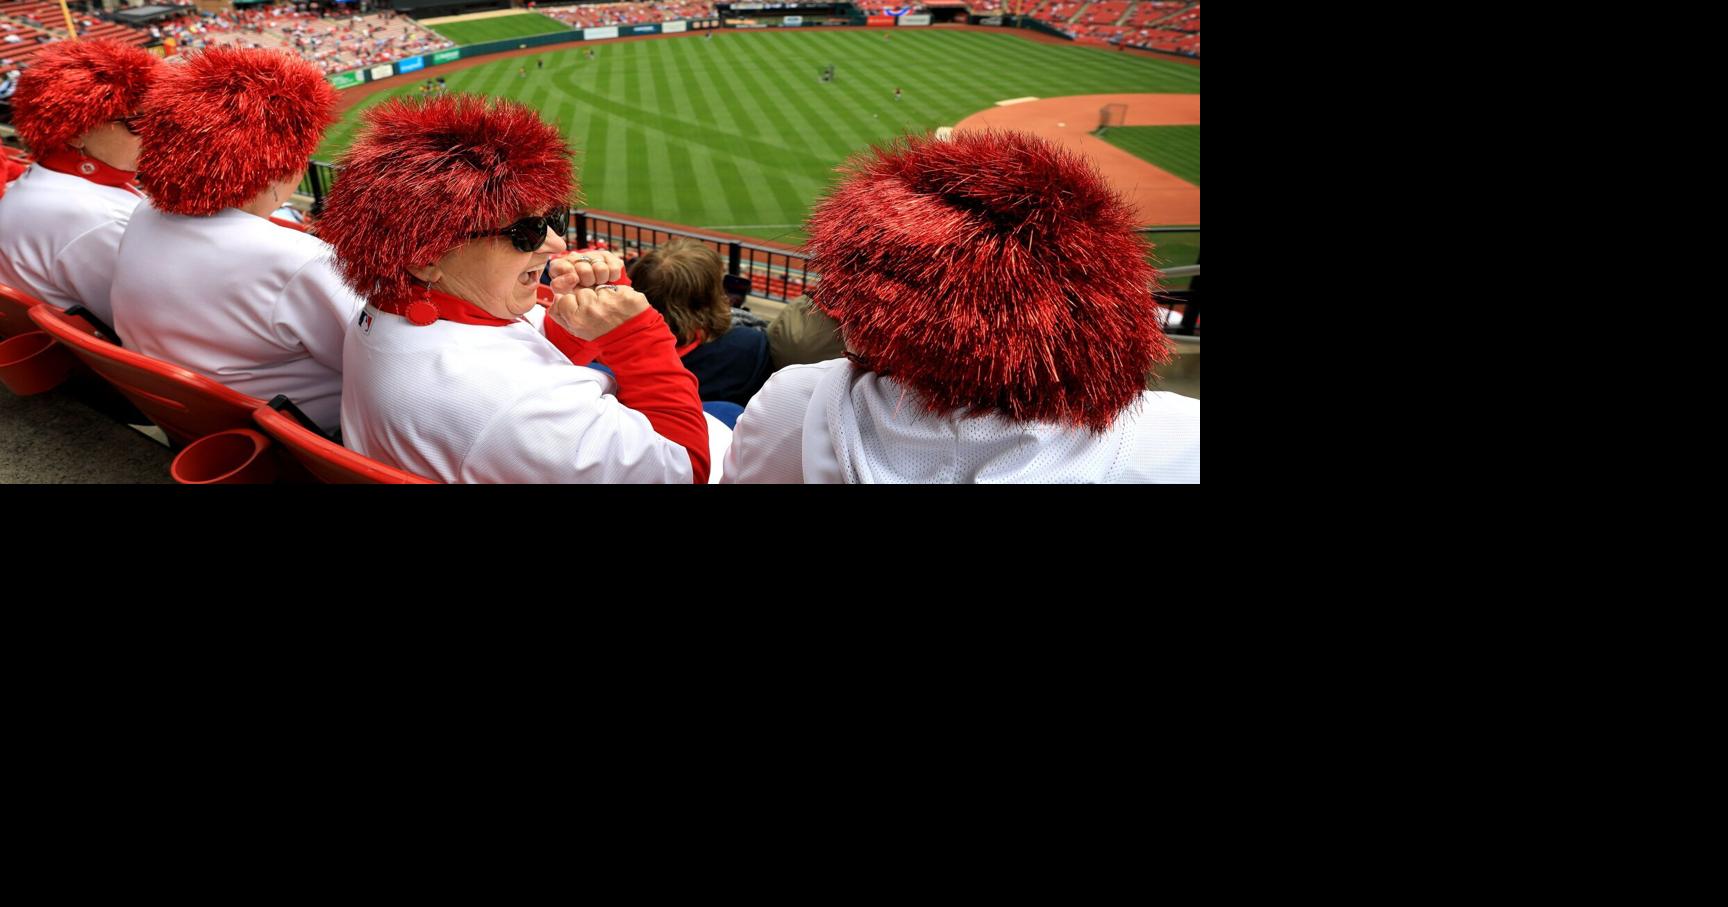 Cardinals welcoming fans back at Busch Stadium